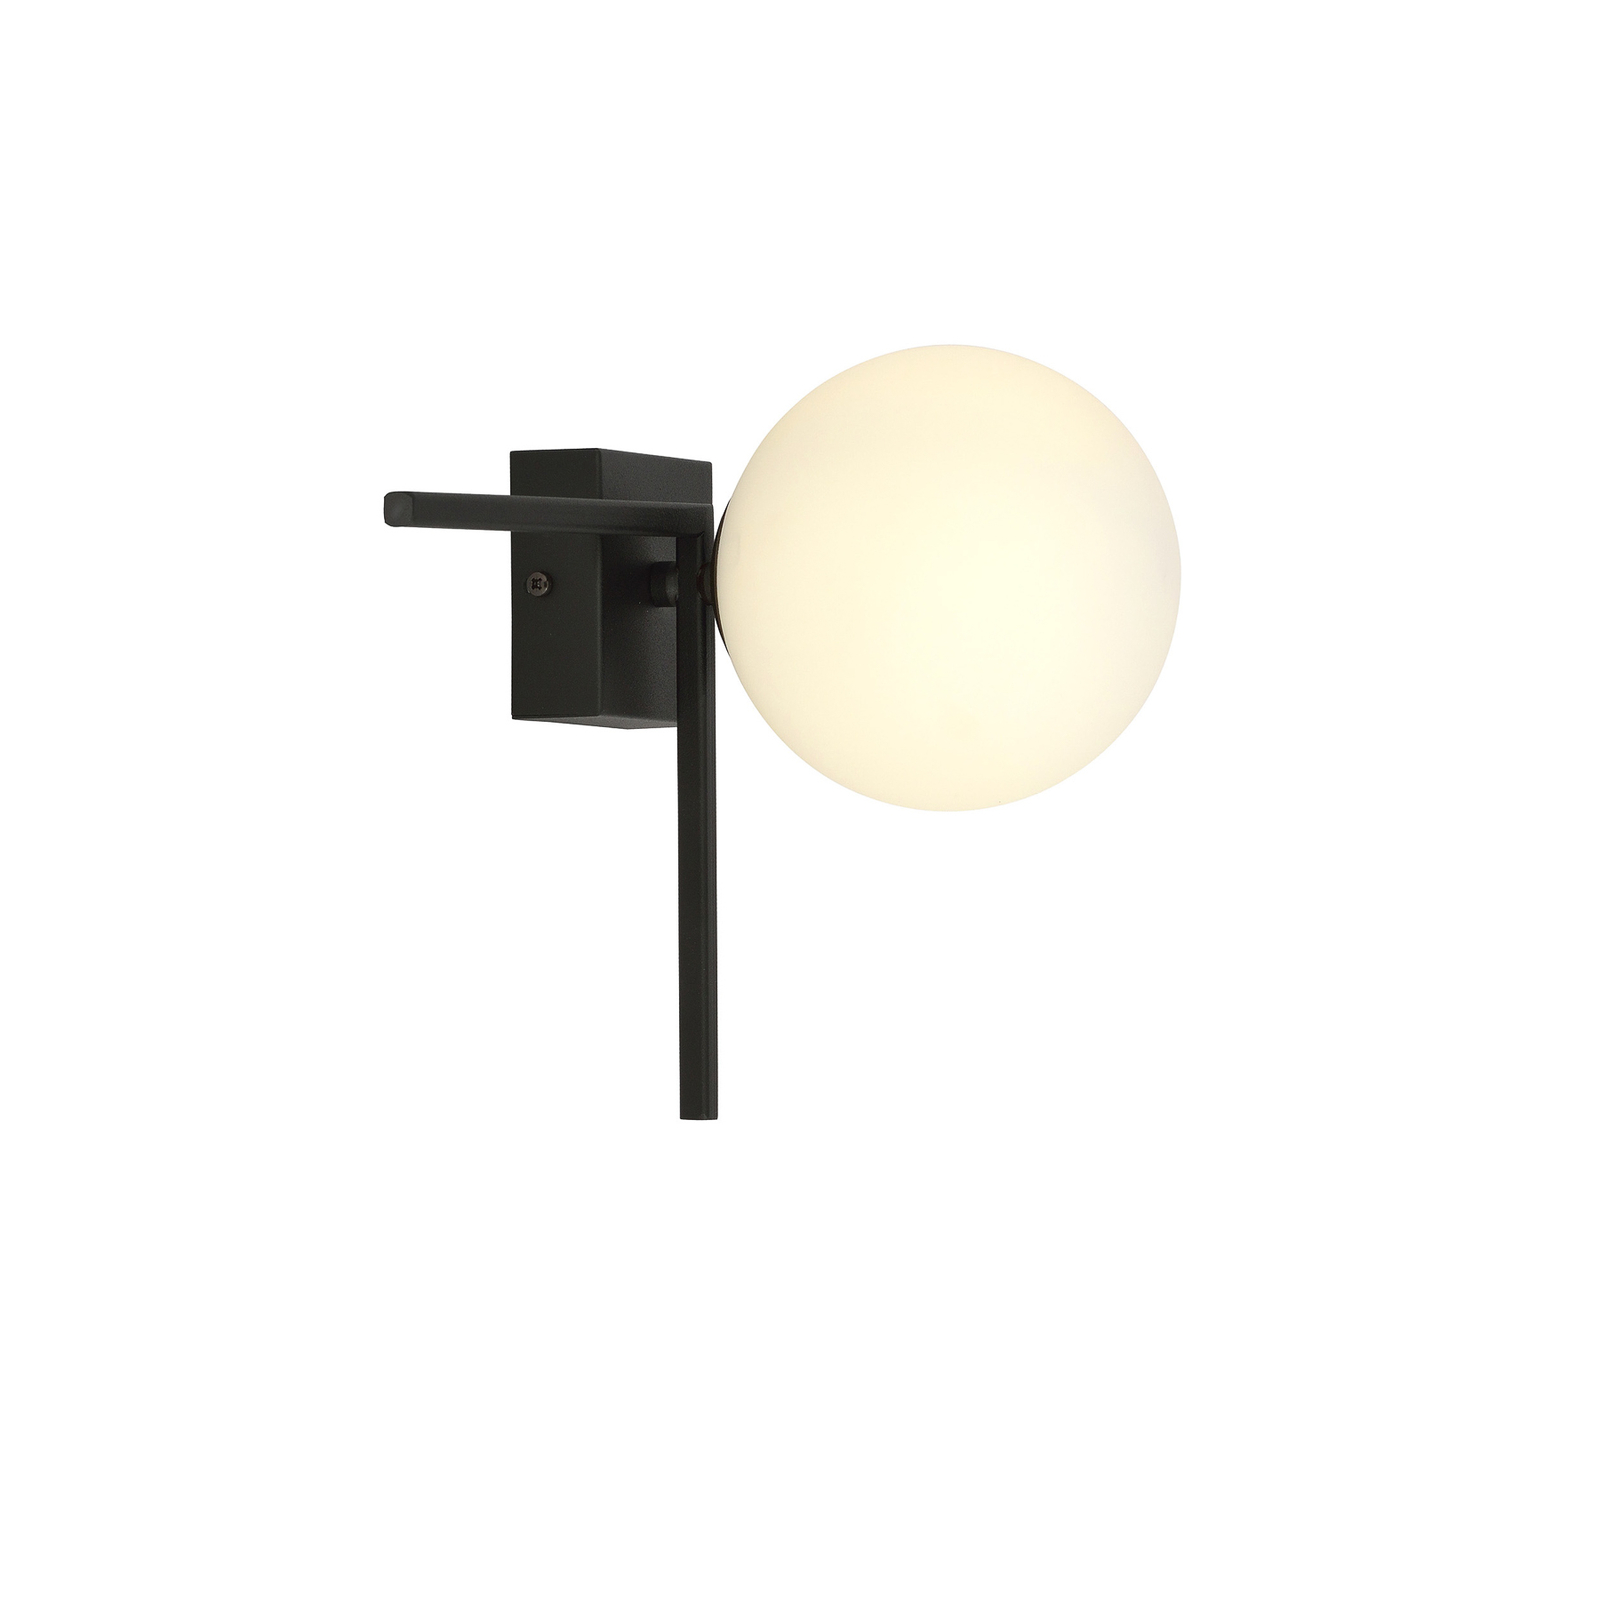 Imago 1G ceiling light, one-bulb, black/opal